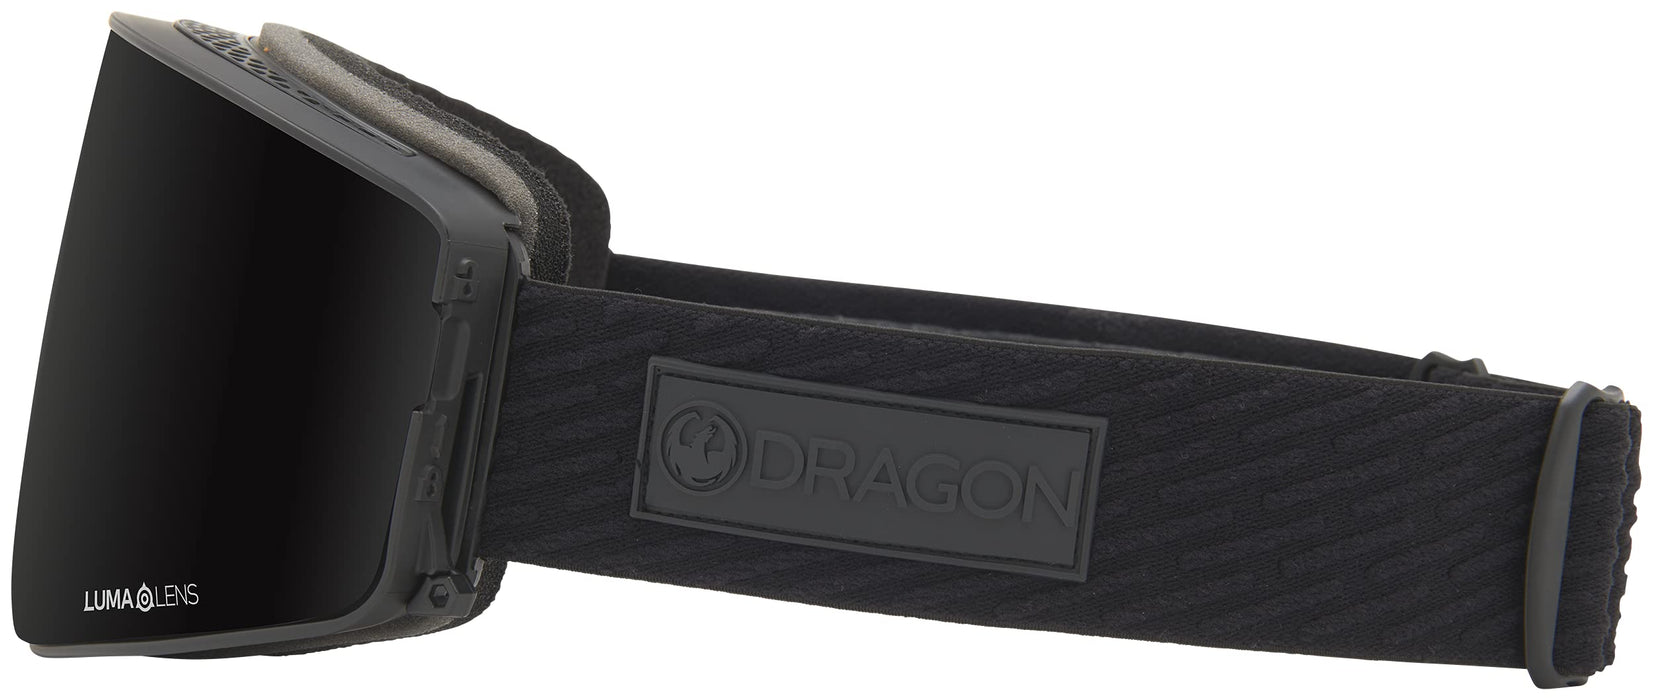 Dragon Alliance PXV2 Goggles